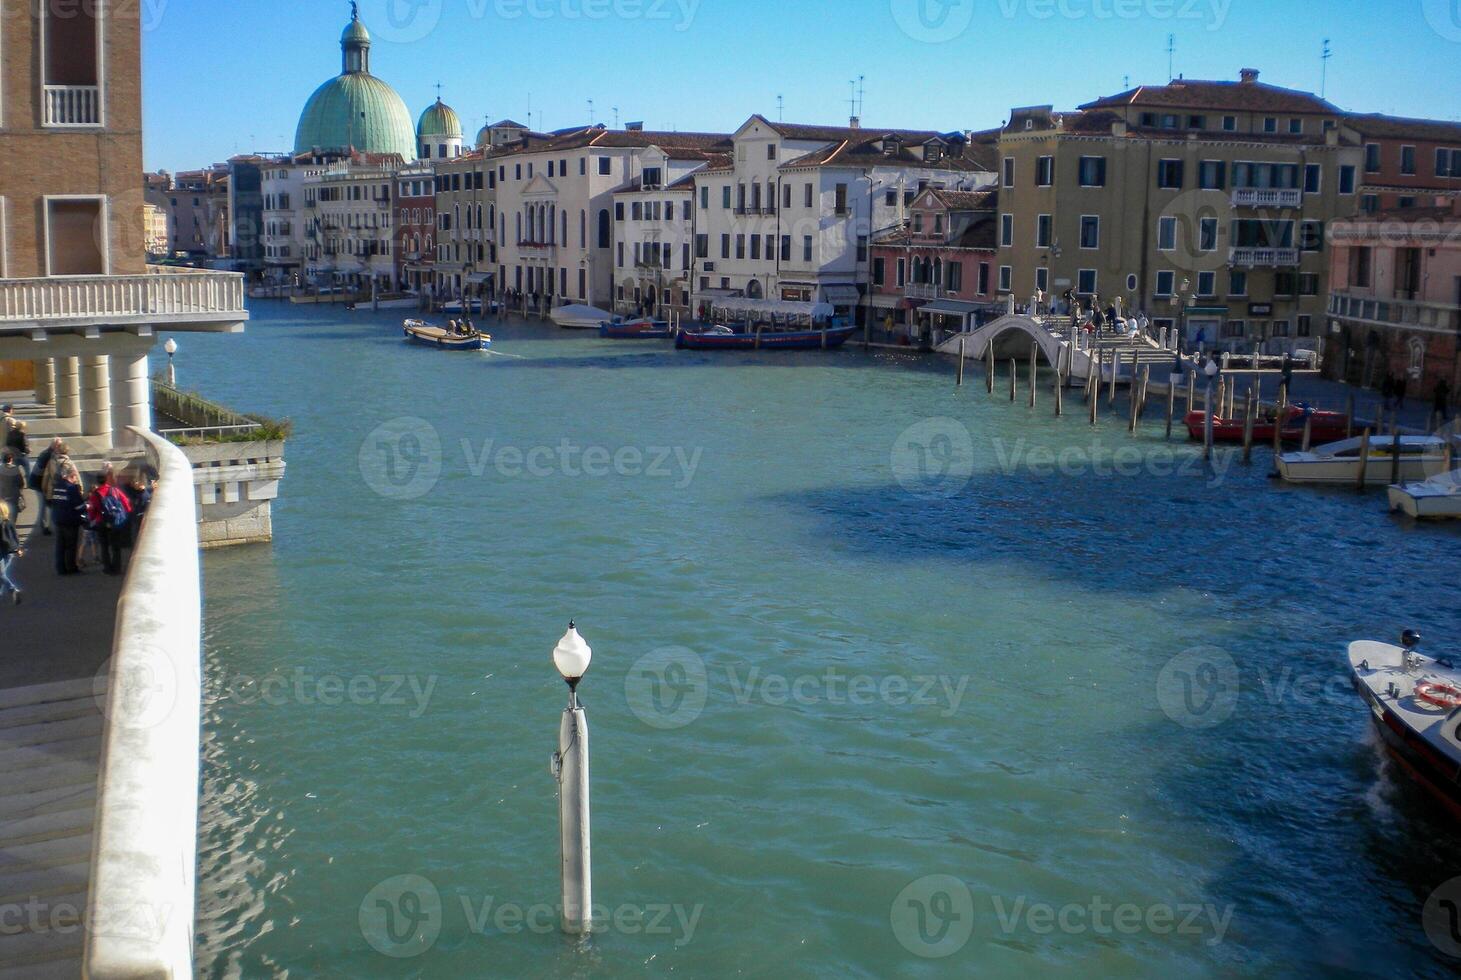 Venedig großartig Kanal, mit es ist ikonisch Wicklung Wasserweg flankiert durch historisch Gebäude und geschäftig Aktivität, verkörpert das Charme und locken von das zauberhaft Stadt von Venedig foto